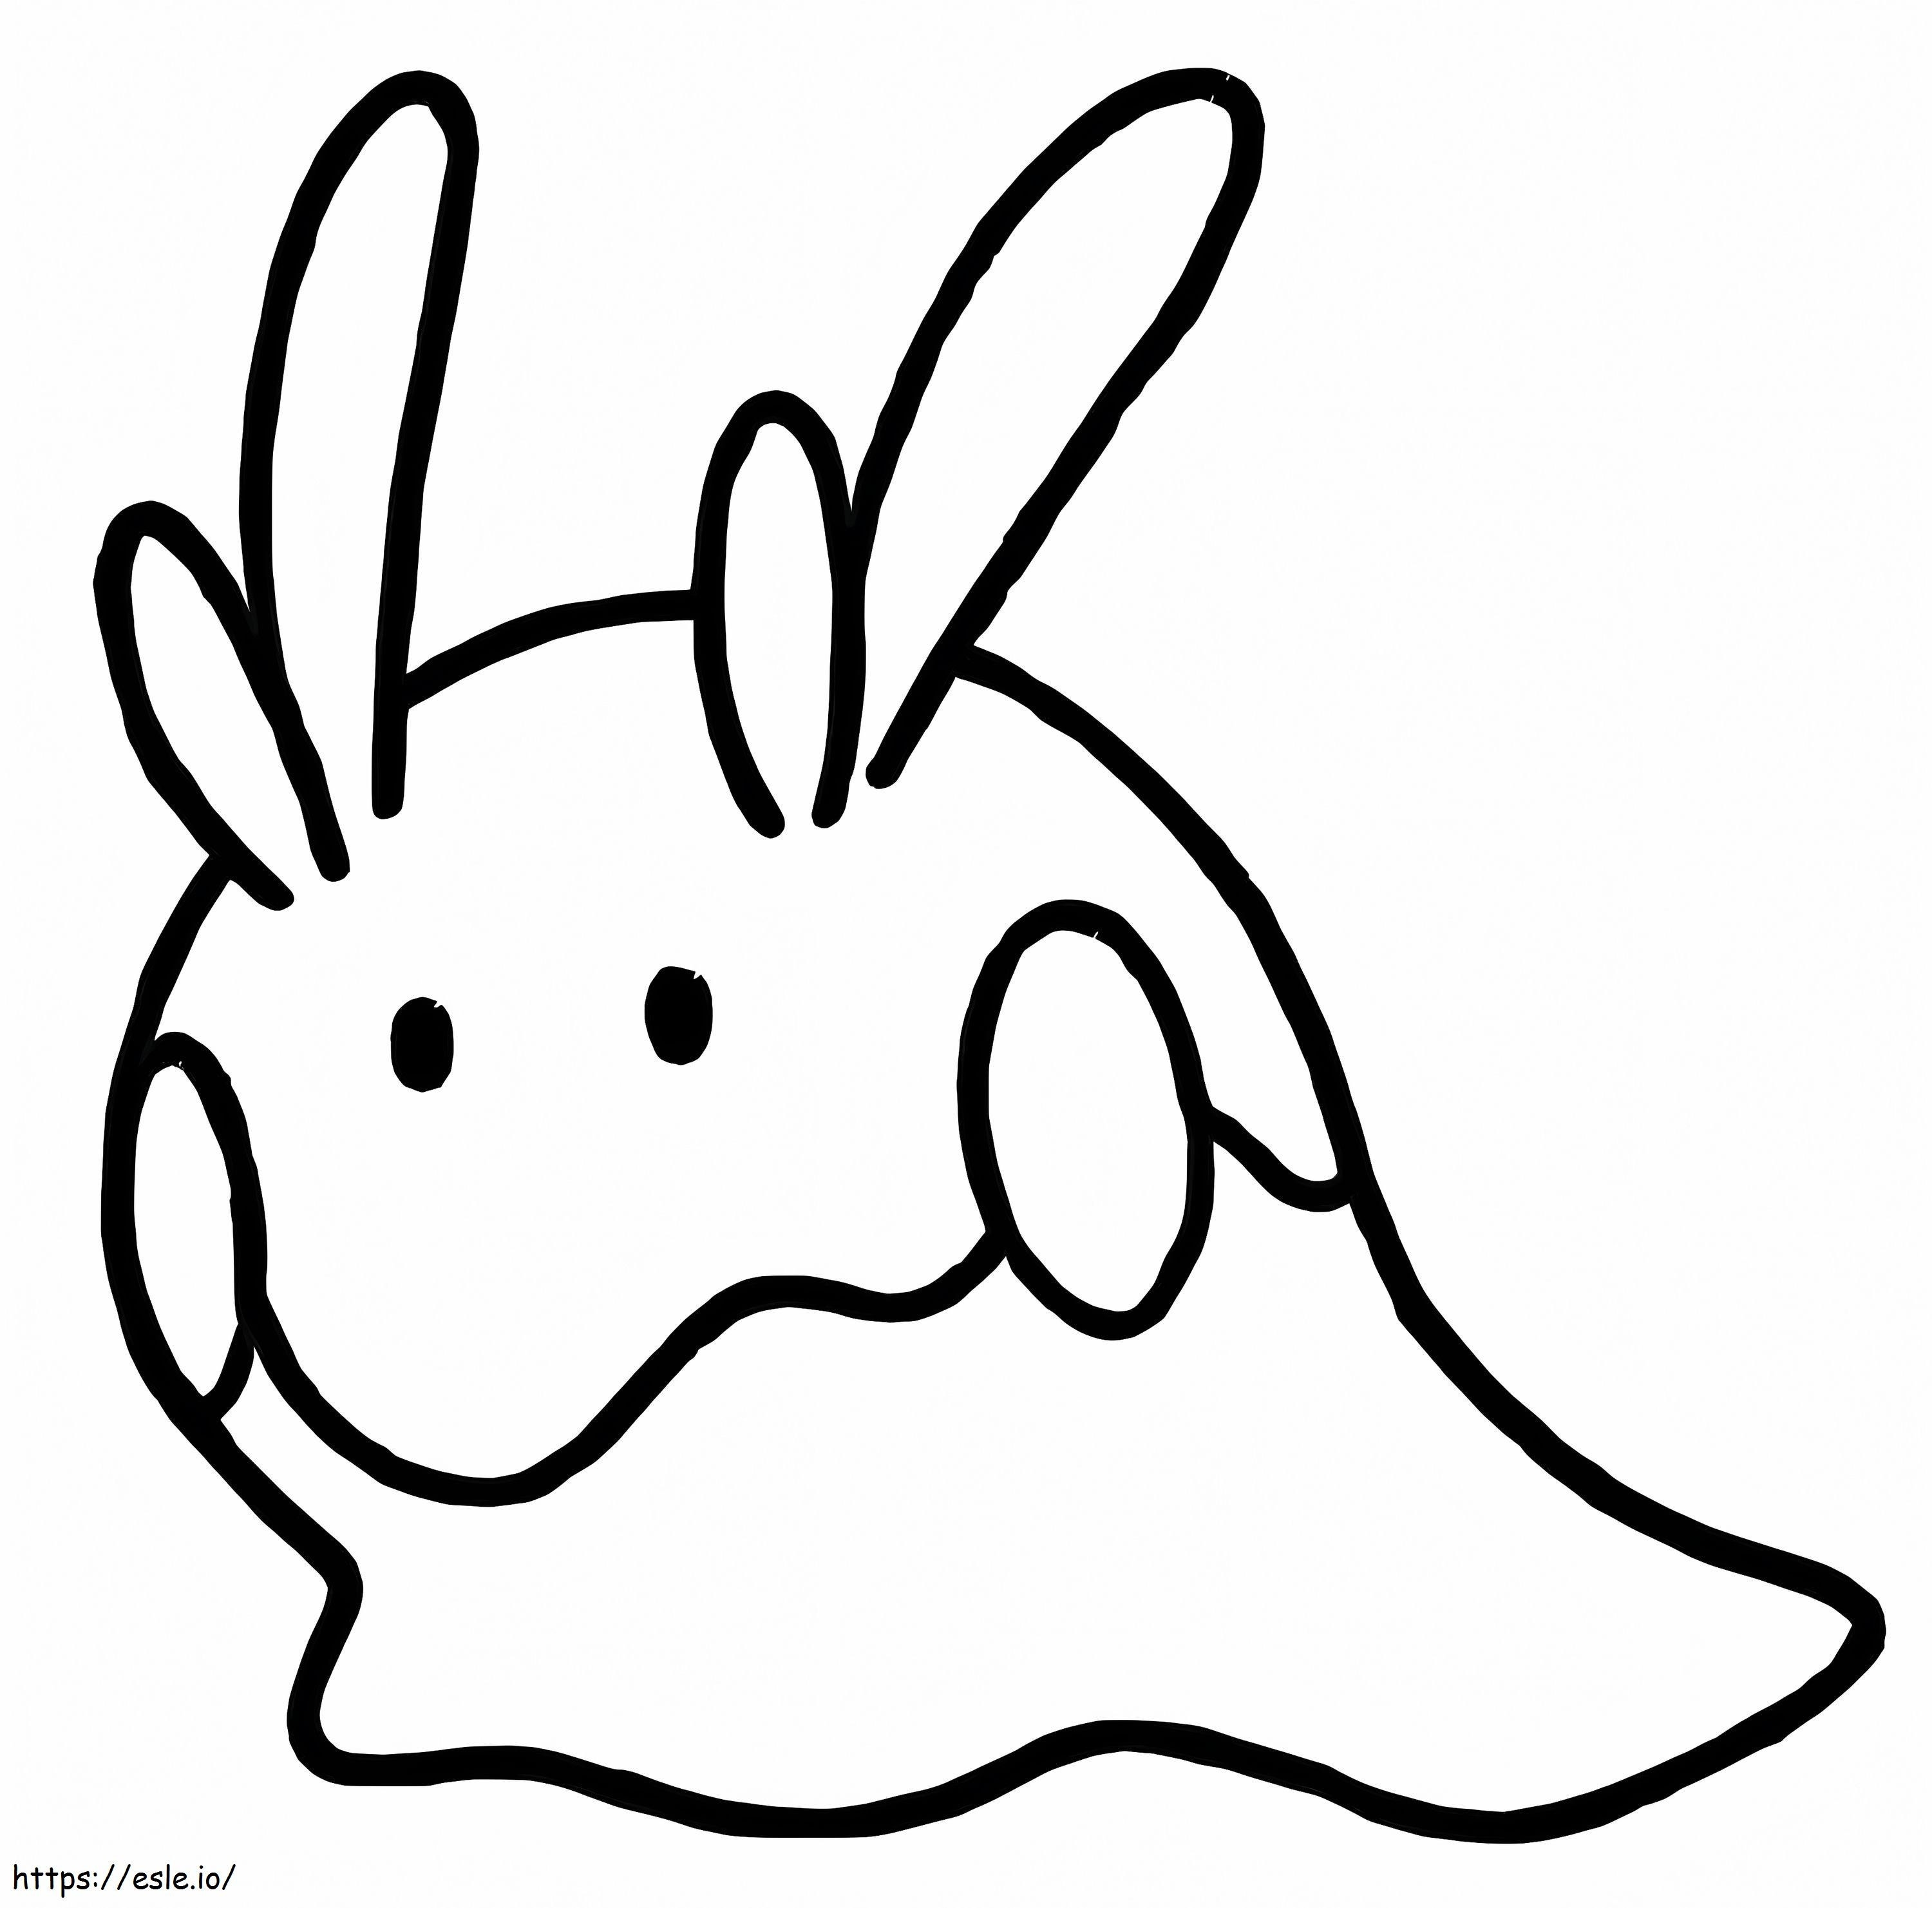 Coloriage Pokémon Goomy Gen 6 à imprimer dessin